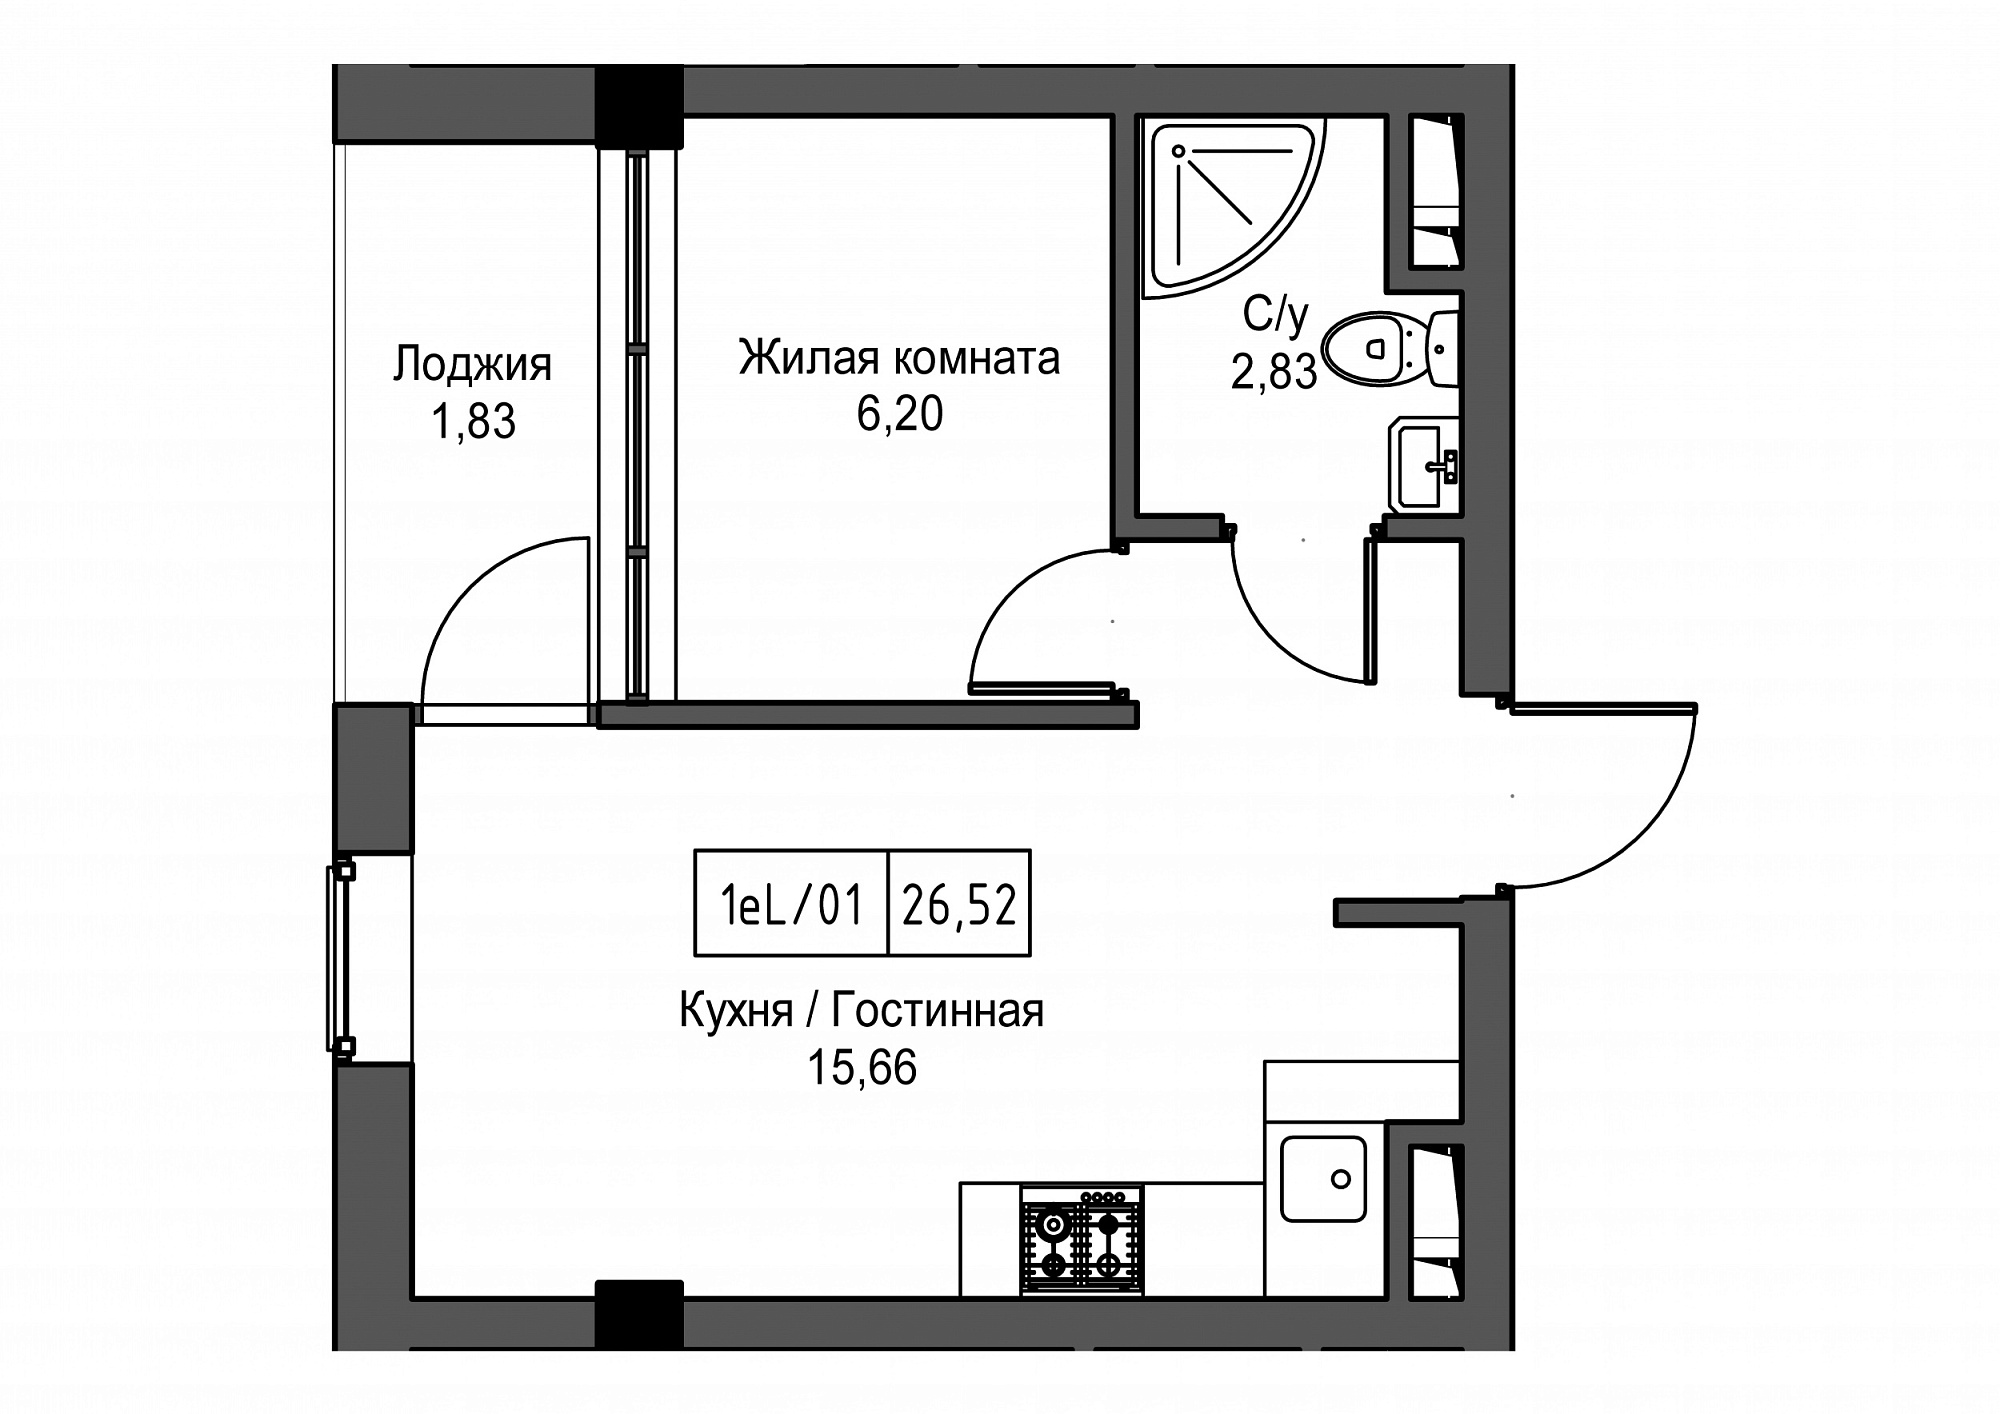 Планировка 1-к квартира площей 26.52м2, UM-002-02/0099.